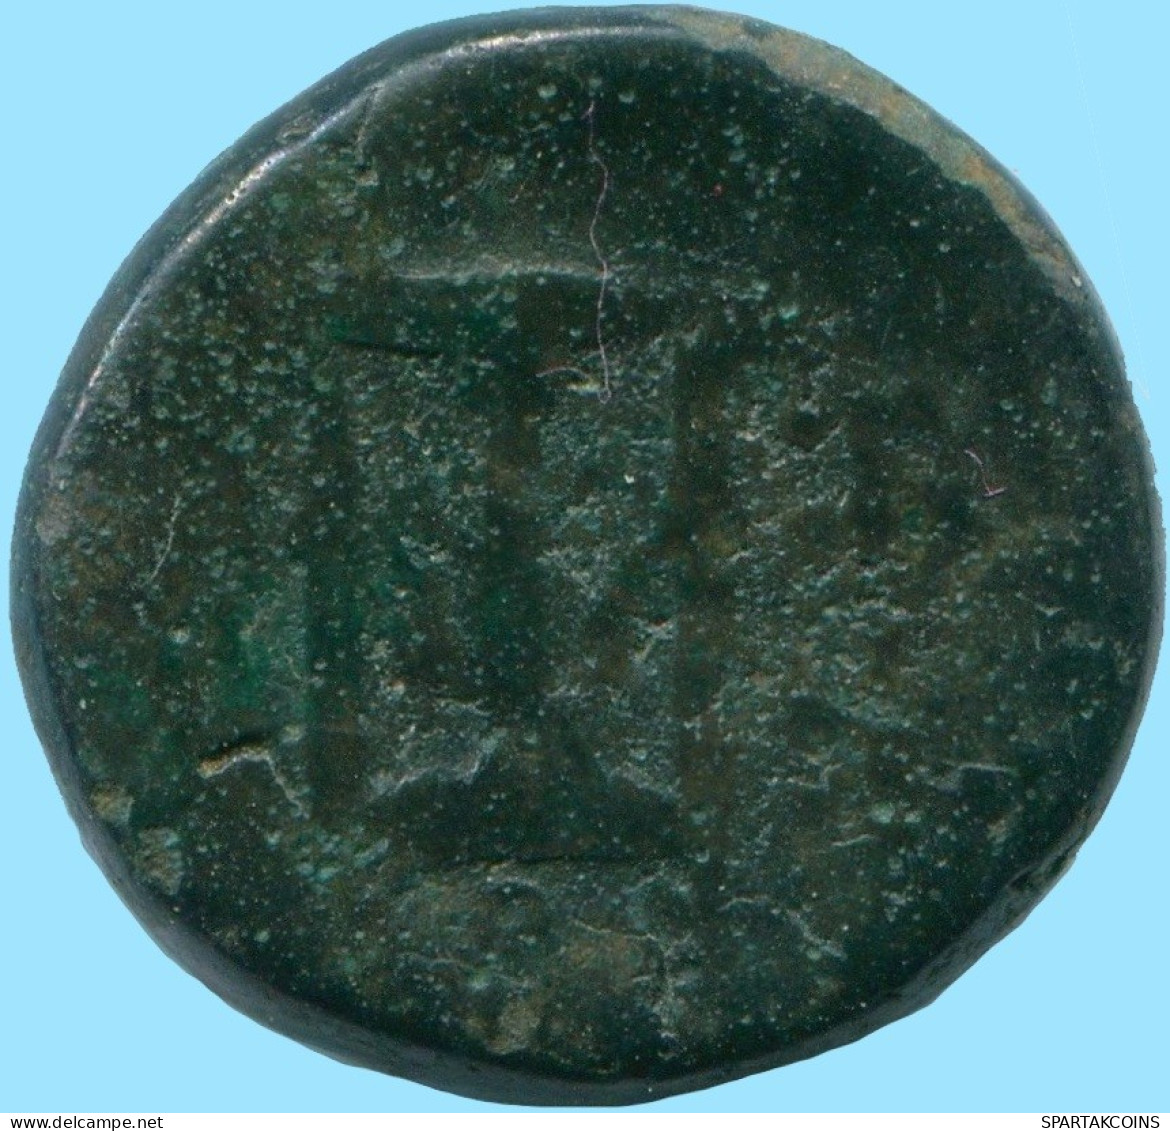 Auténtico Original GRIEGO ANTIGUO Moneda 6.36g/17.61mm #ANC13408.8.E.A - Griekenland